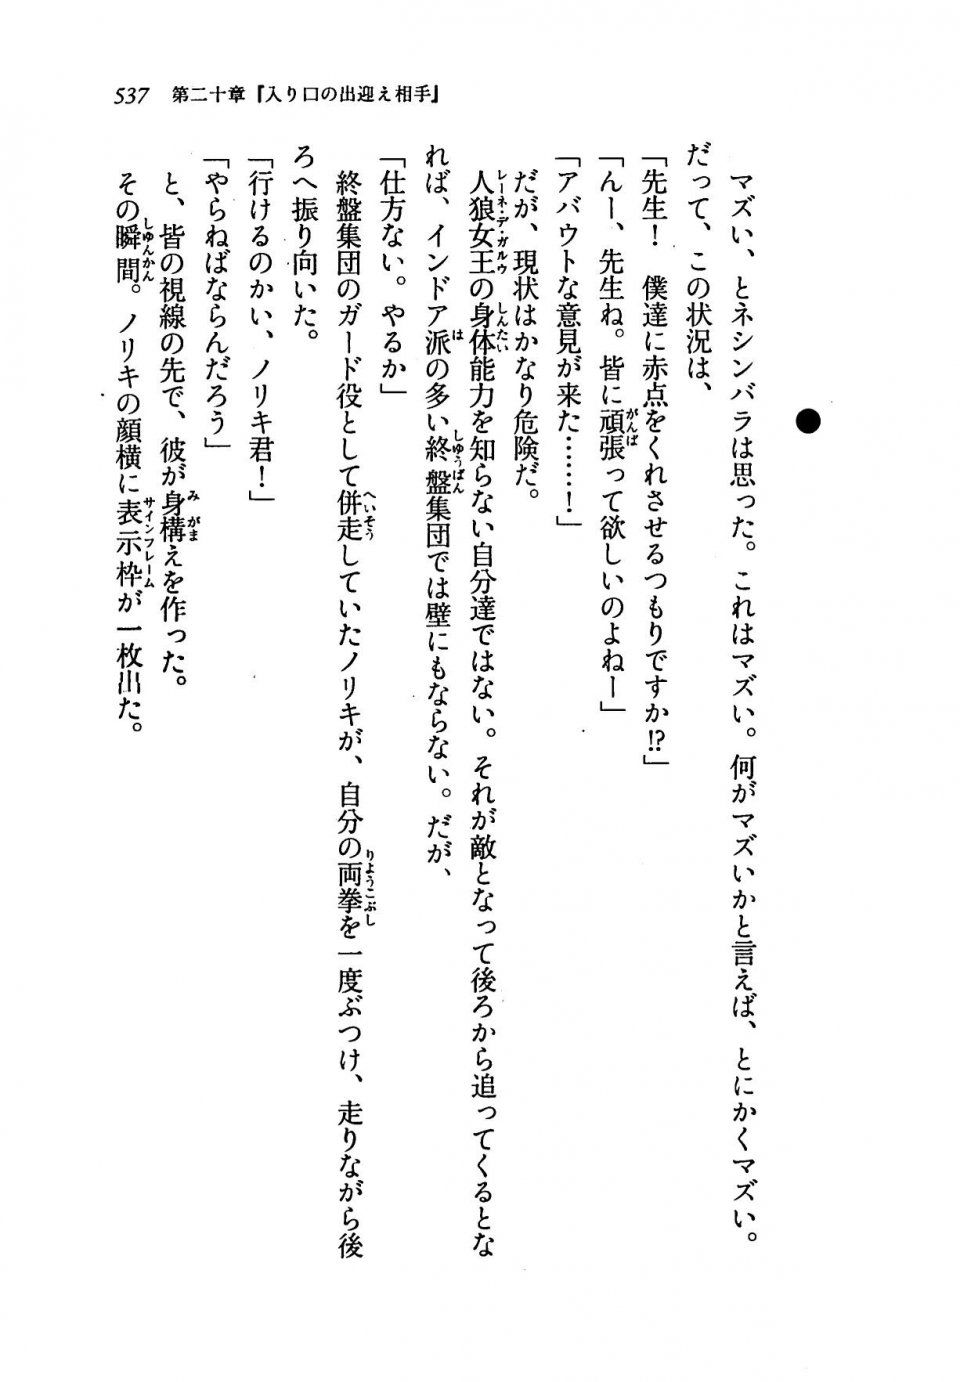 Kyoukai Senjou no Horizon LN Vol 19(8A) - Photo #537